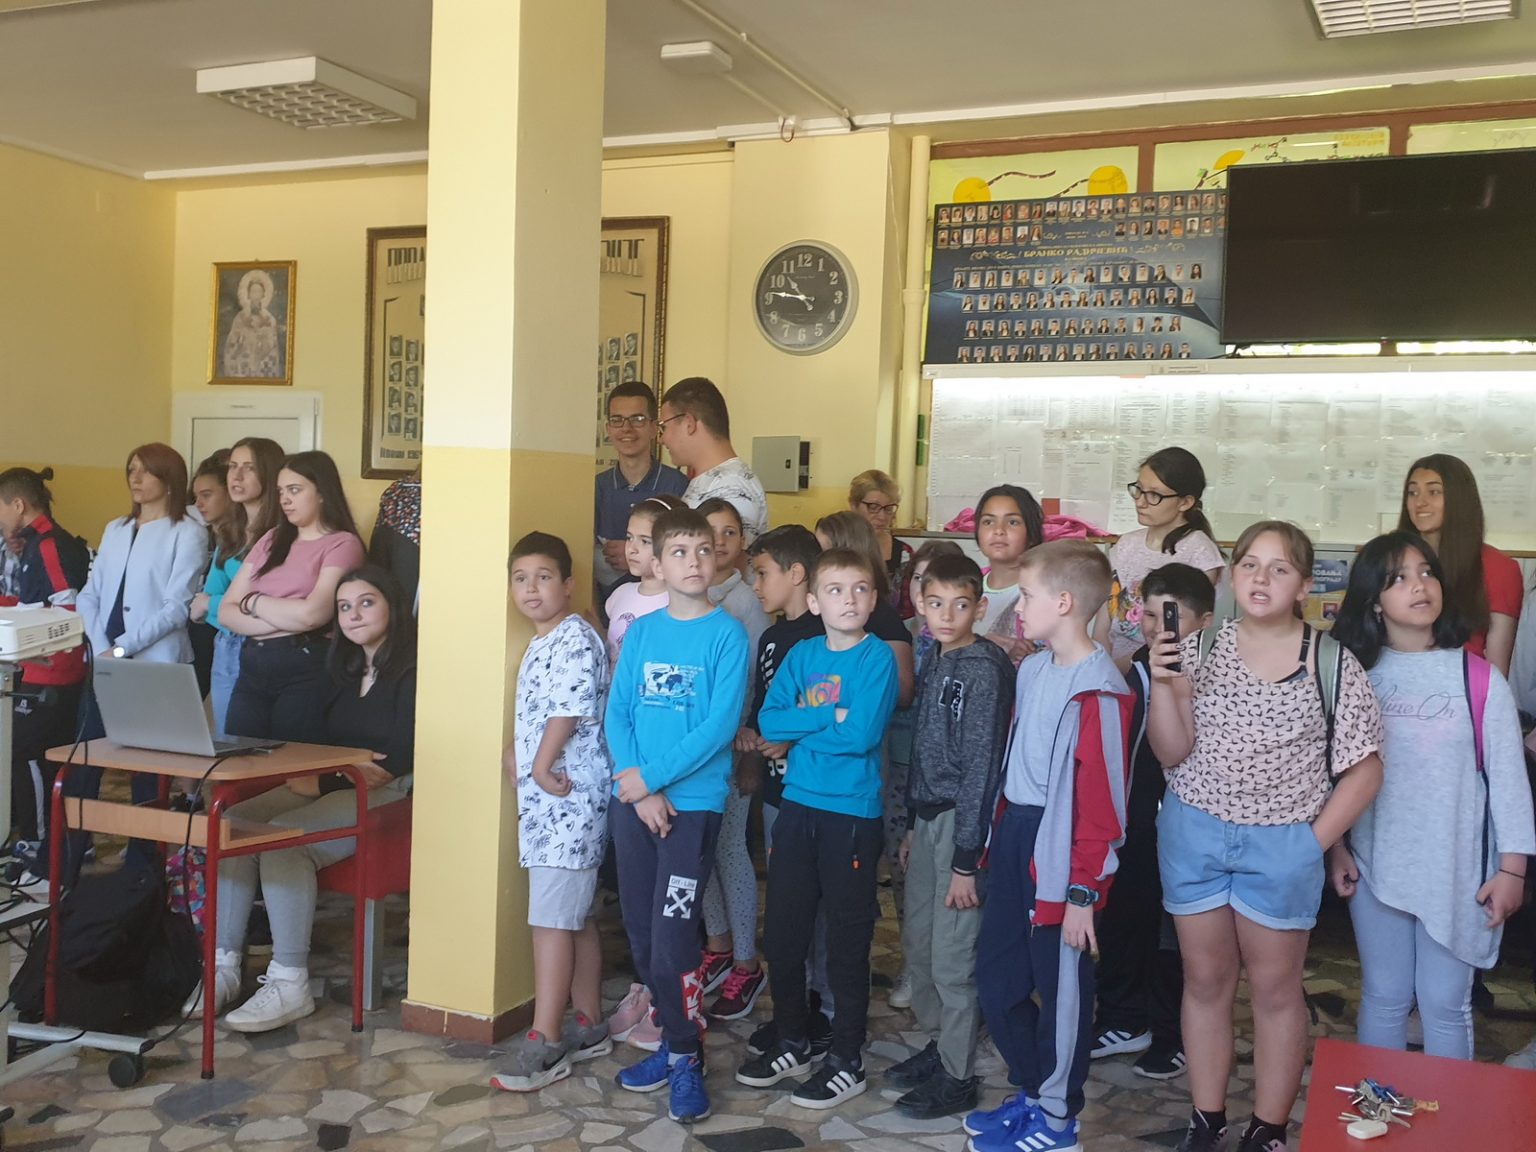 Kovin: Osnovna škola "Desanka Maksimović" obeležava svoj dan